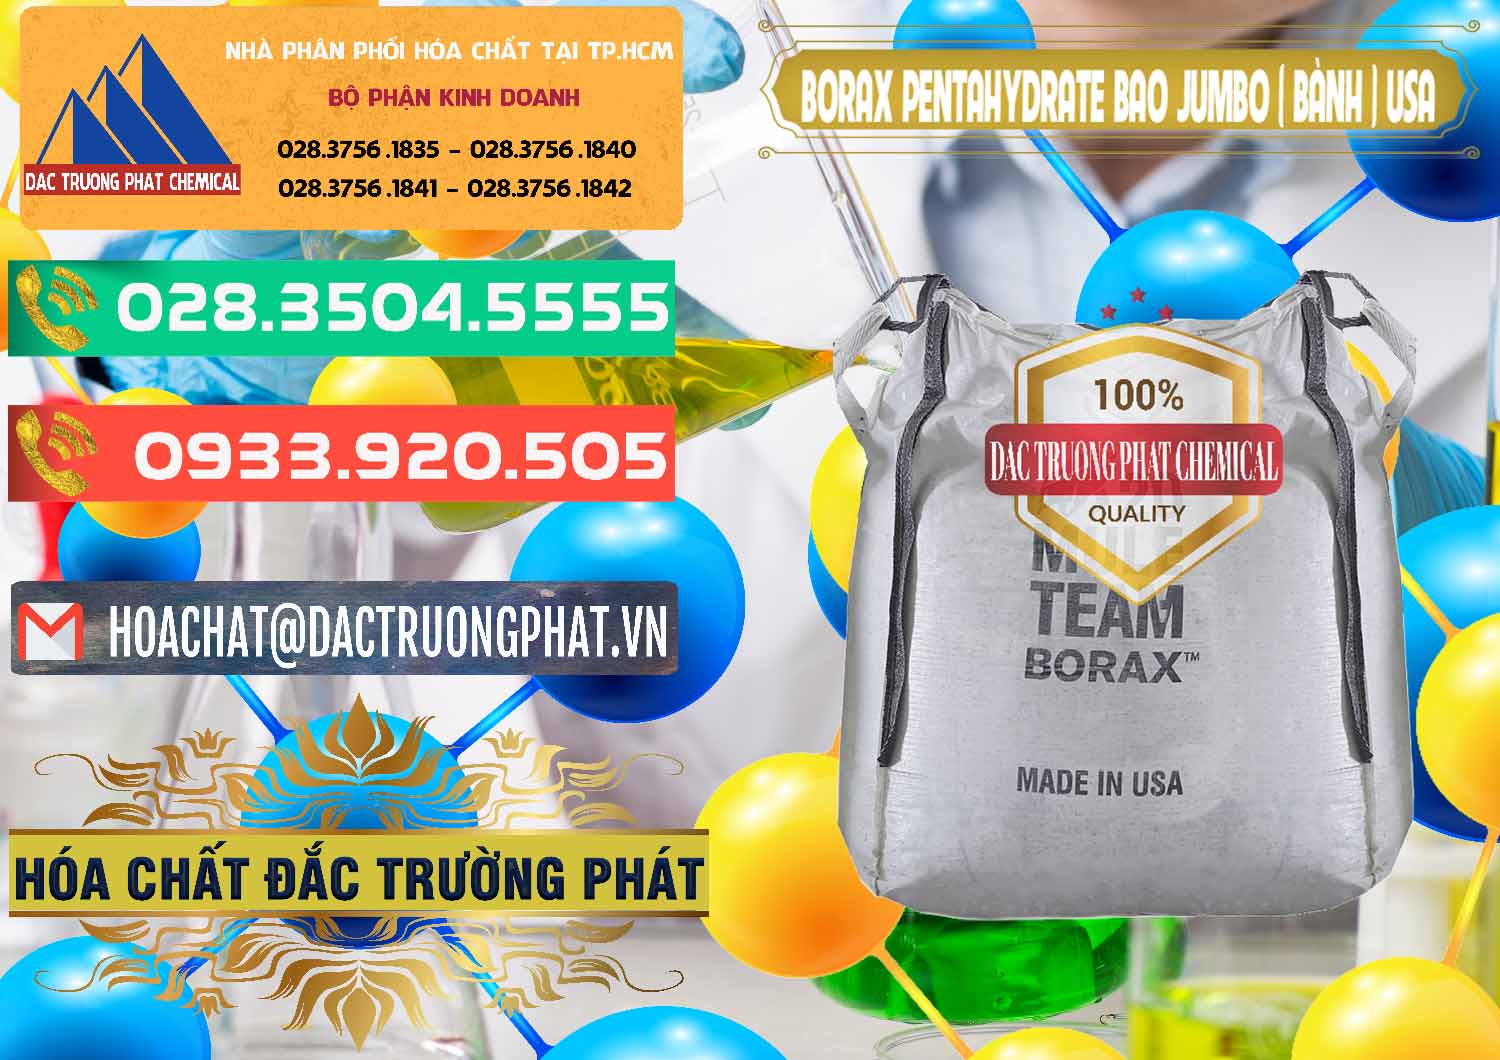 Nơi kinh doanh ( bán ) Borax Pentahydrate Bao Jumbo ( Bành ) Mule 20 Team Mỹ Usa - 0278 - Đơn vị chuyên cung ứng _ phân phối hóa chất tại TP.HCM - congtyhoachat.com.vn